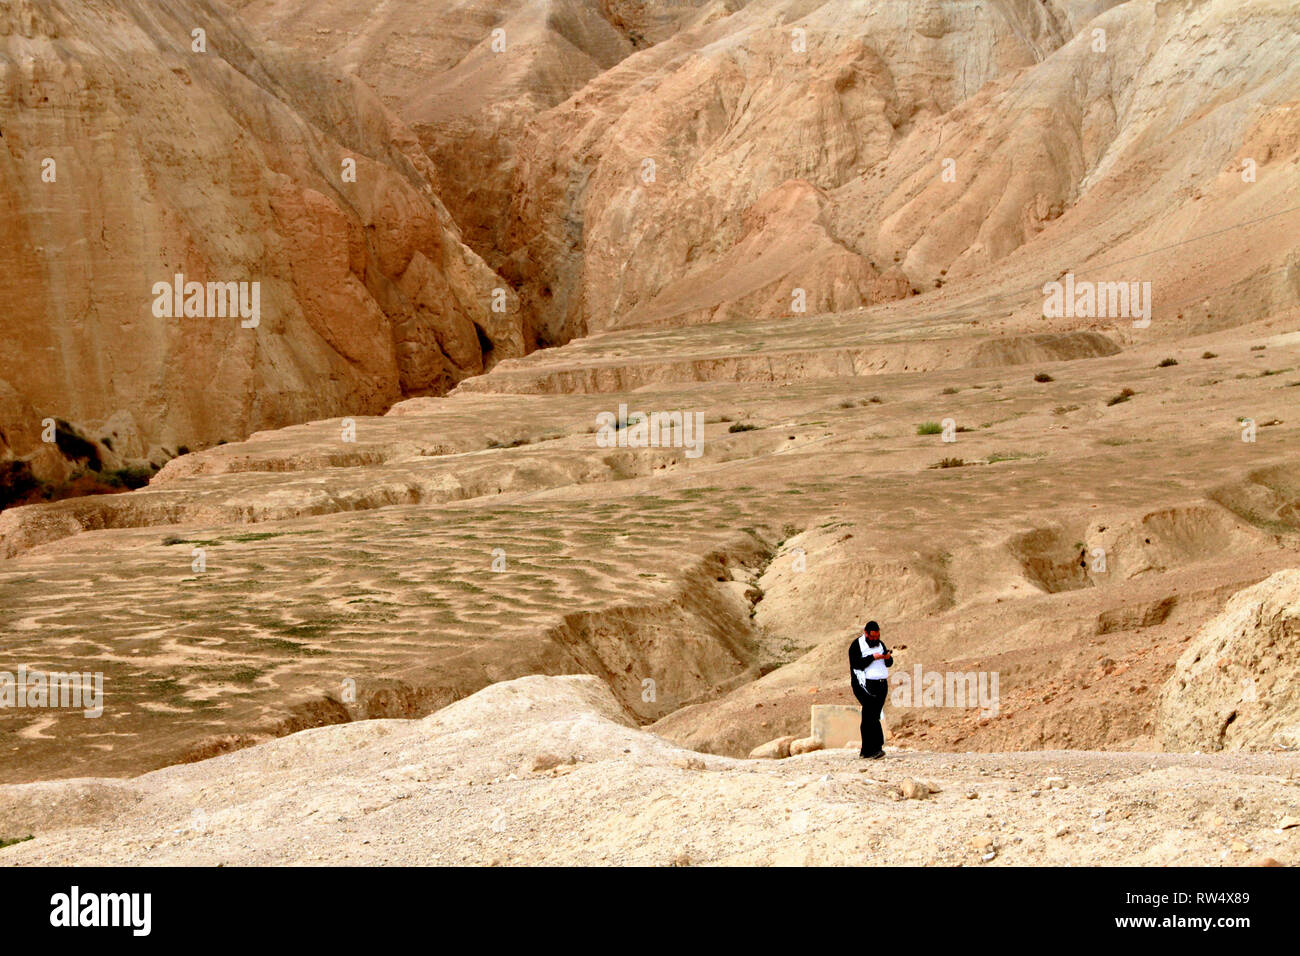 Un homme marche solitaire dans un sentier désert aride des collines. Banque D'Images